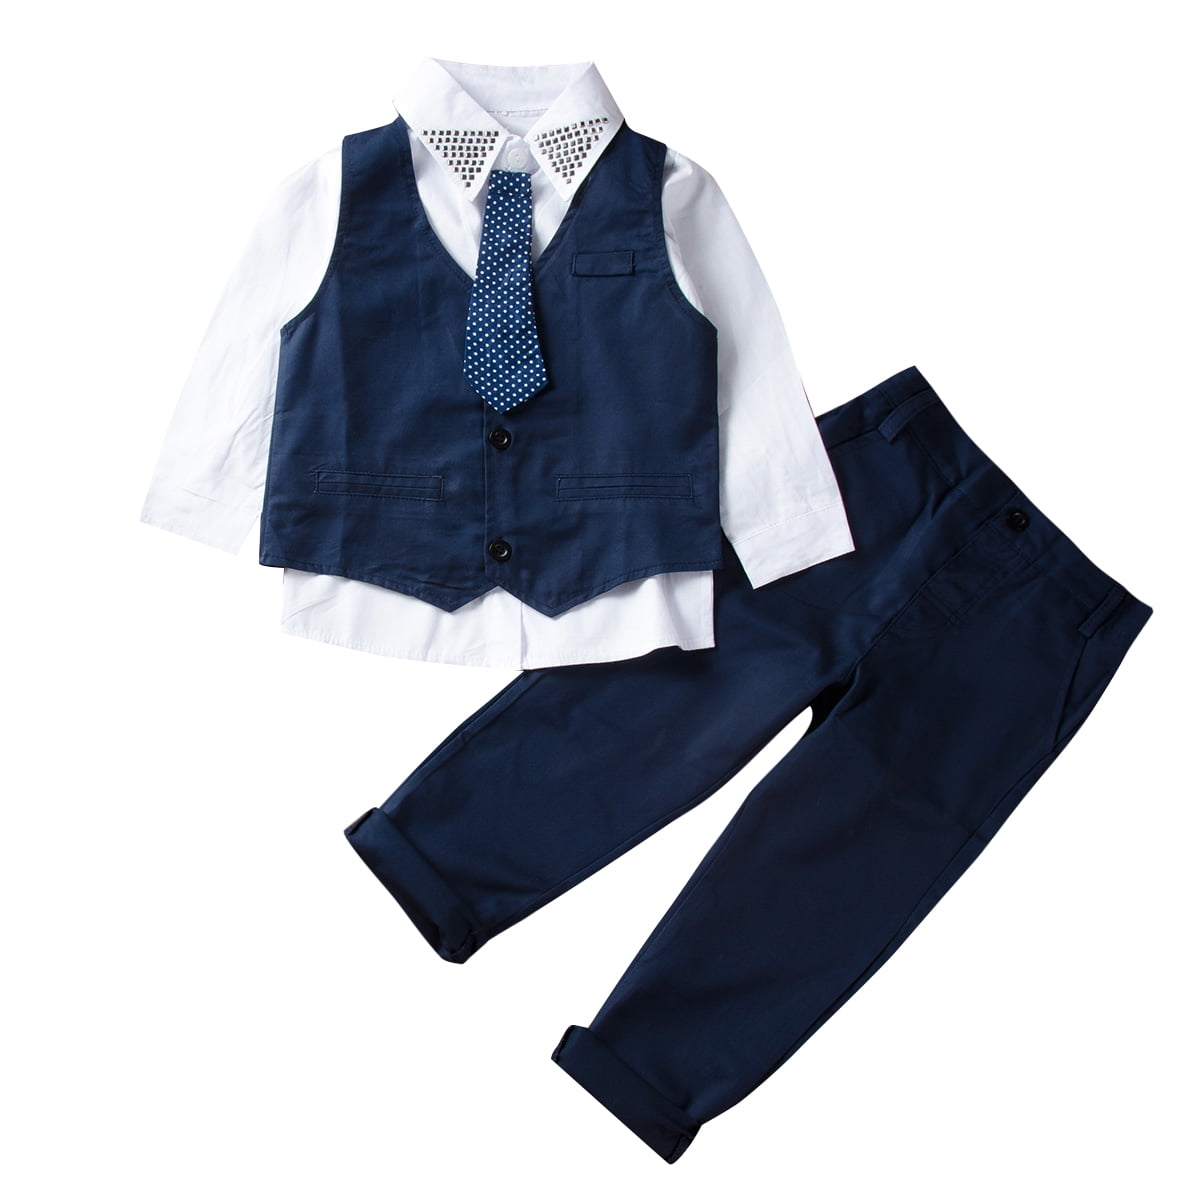 Bagilaanoe 4Pcs Little Boy Gentleman Outfits Waistcoat + Tie + Shirt ...